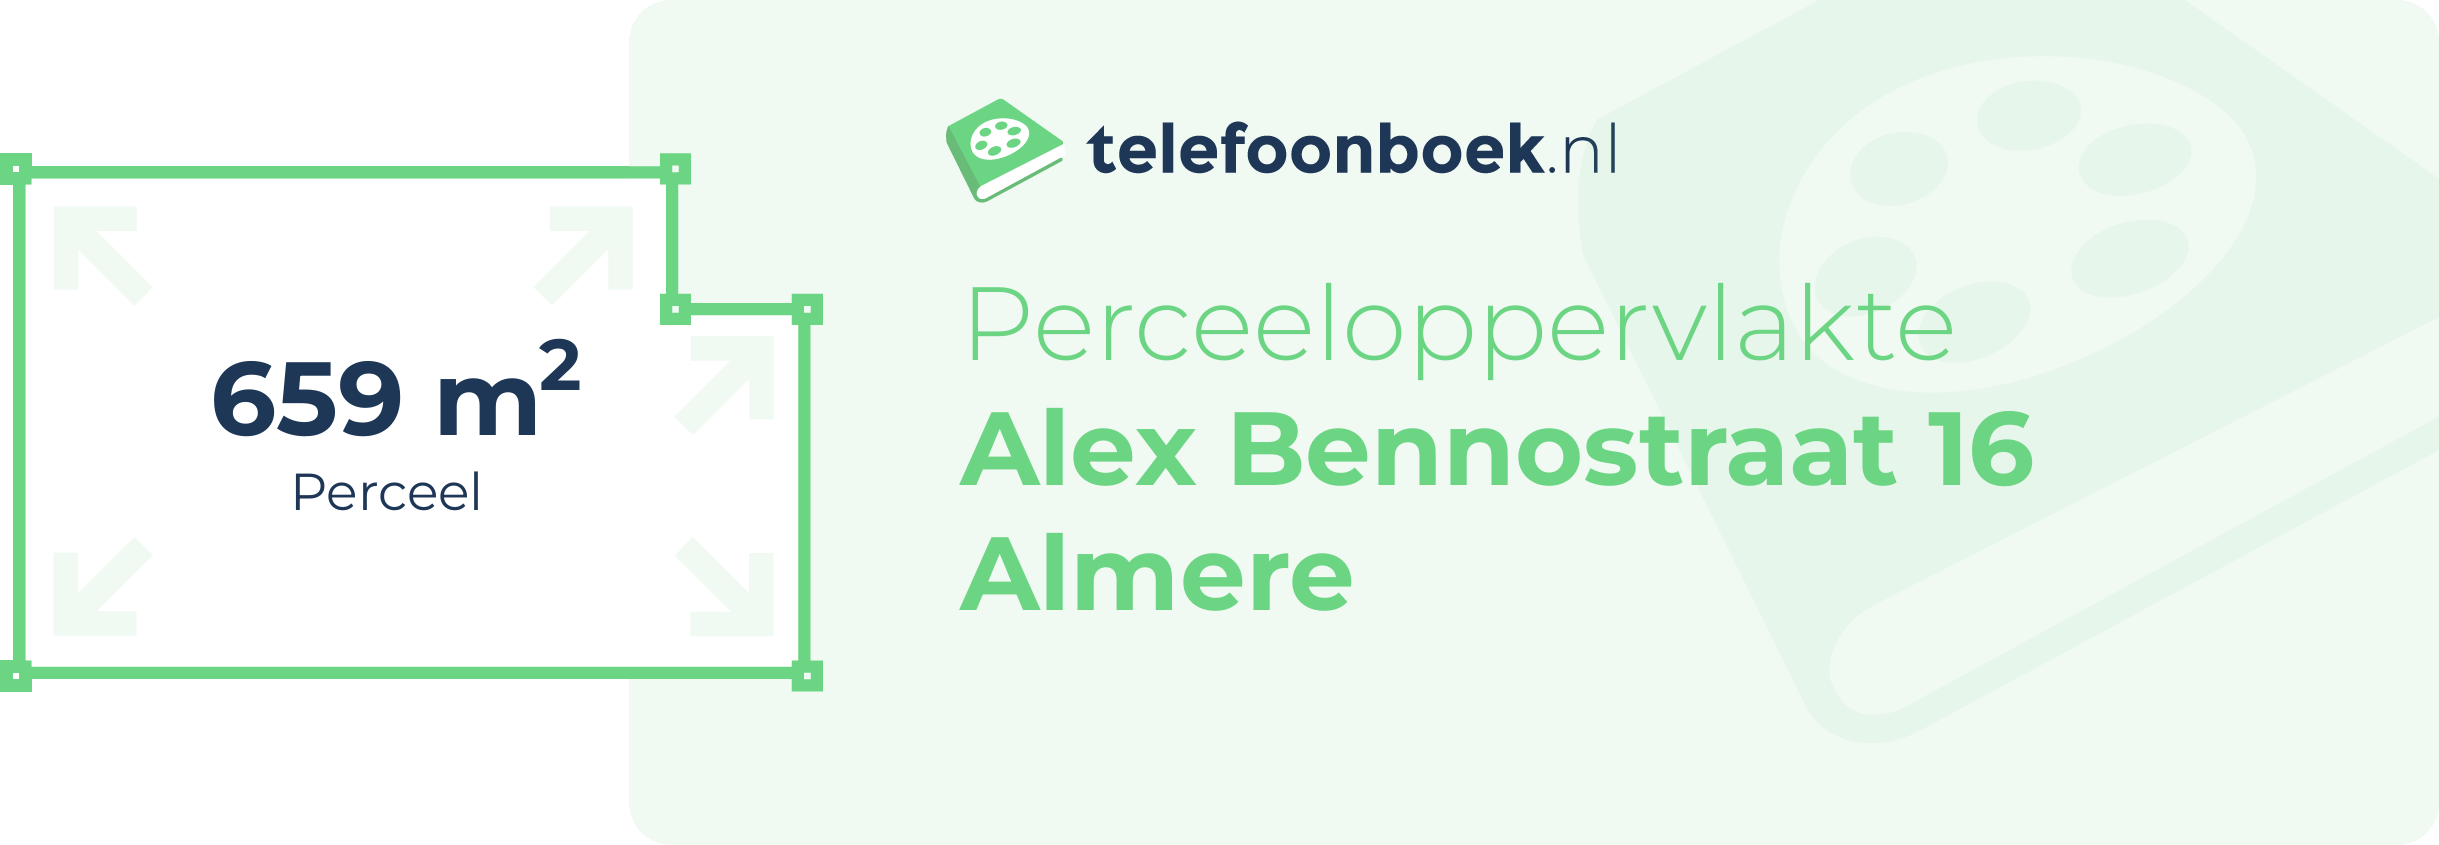 Perceeloppervlakte Alex Bennostraat 16 Almere